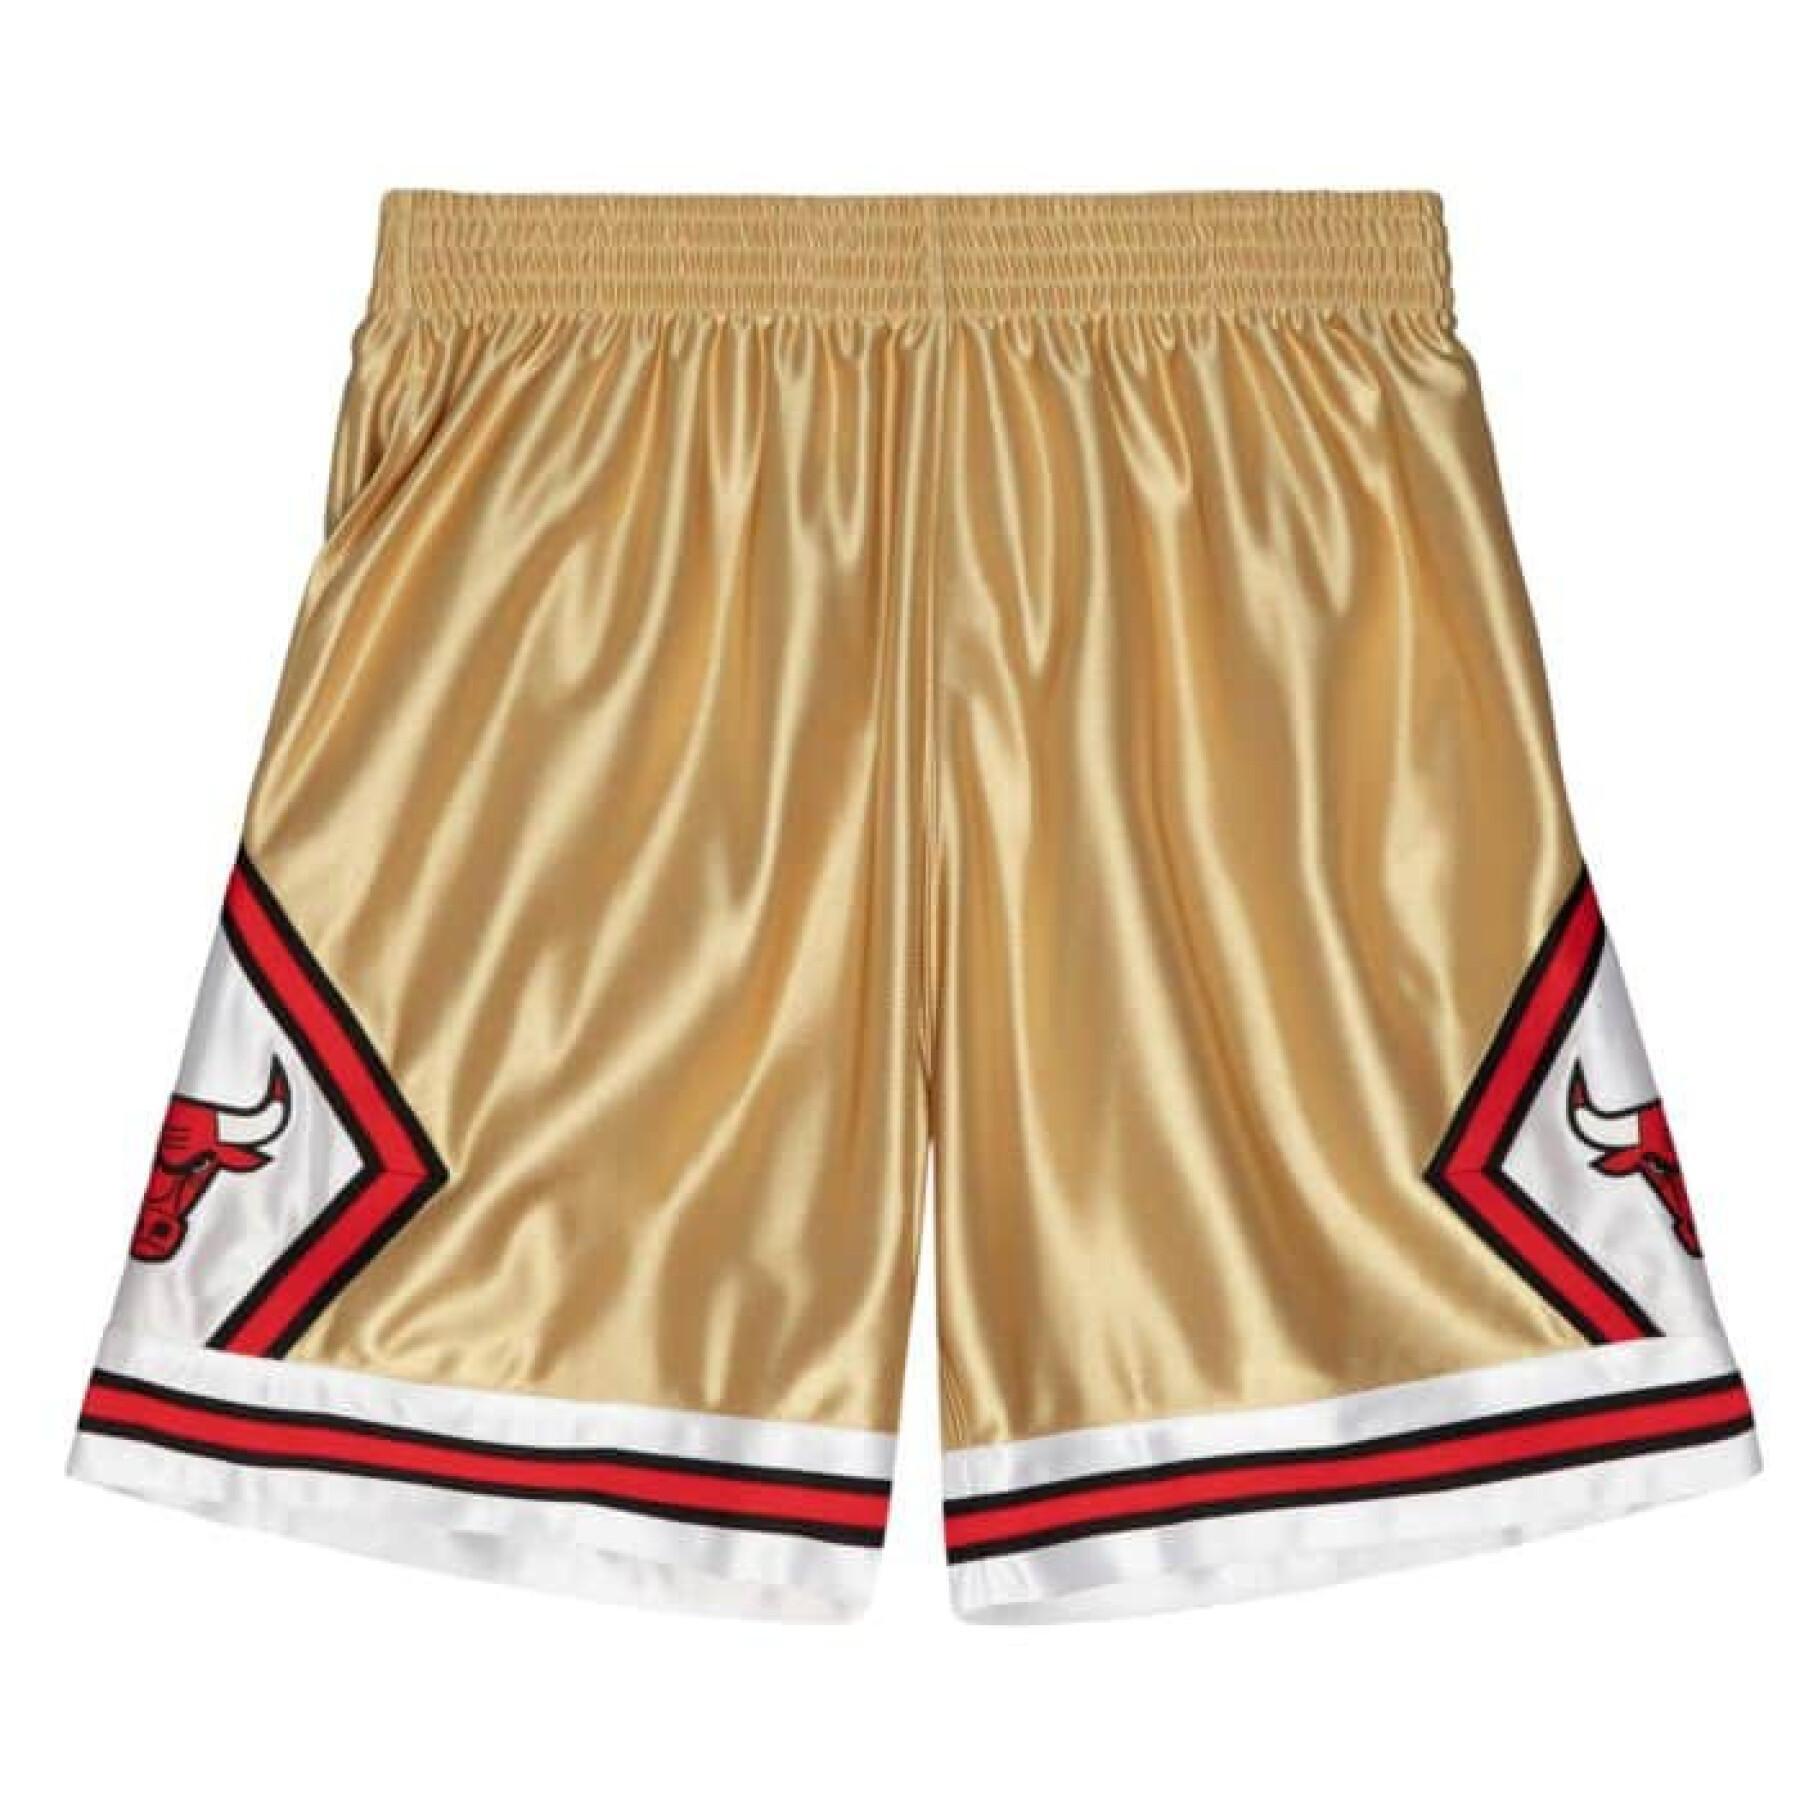 Short Chicago Bulls - Shorts - Clothing - Men